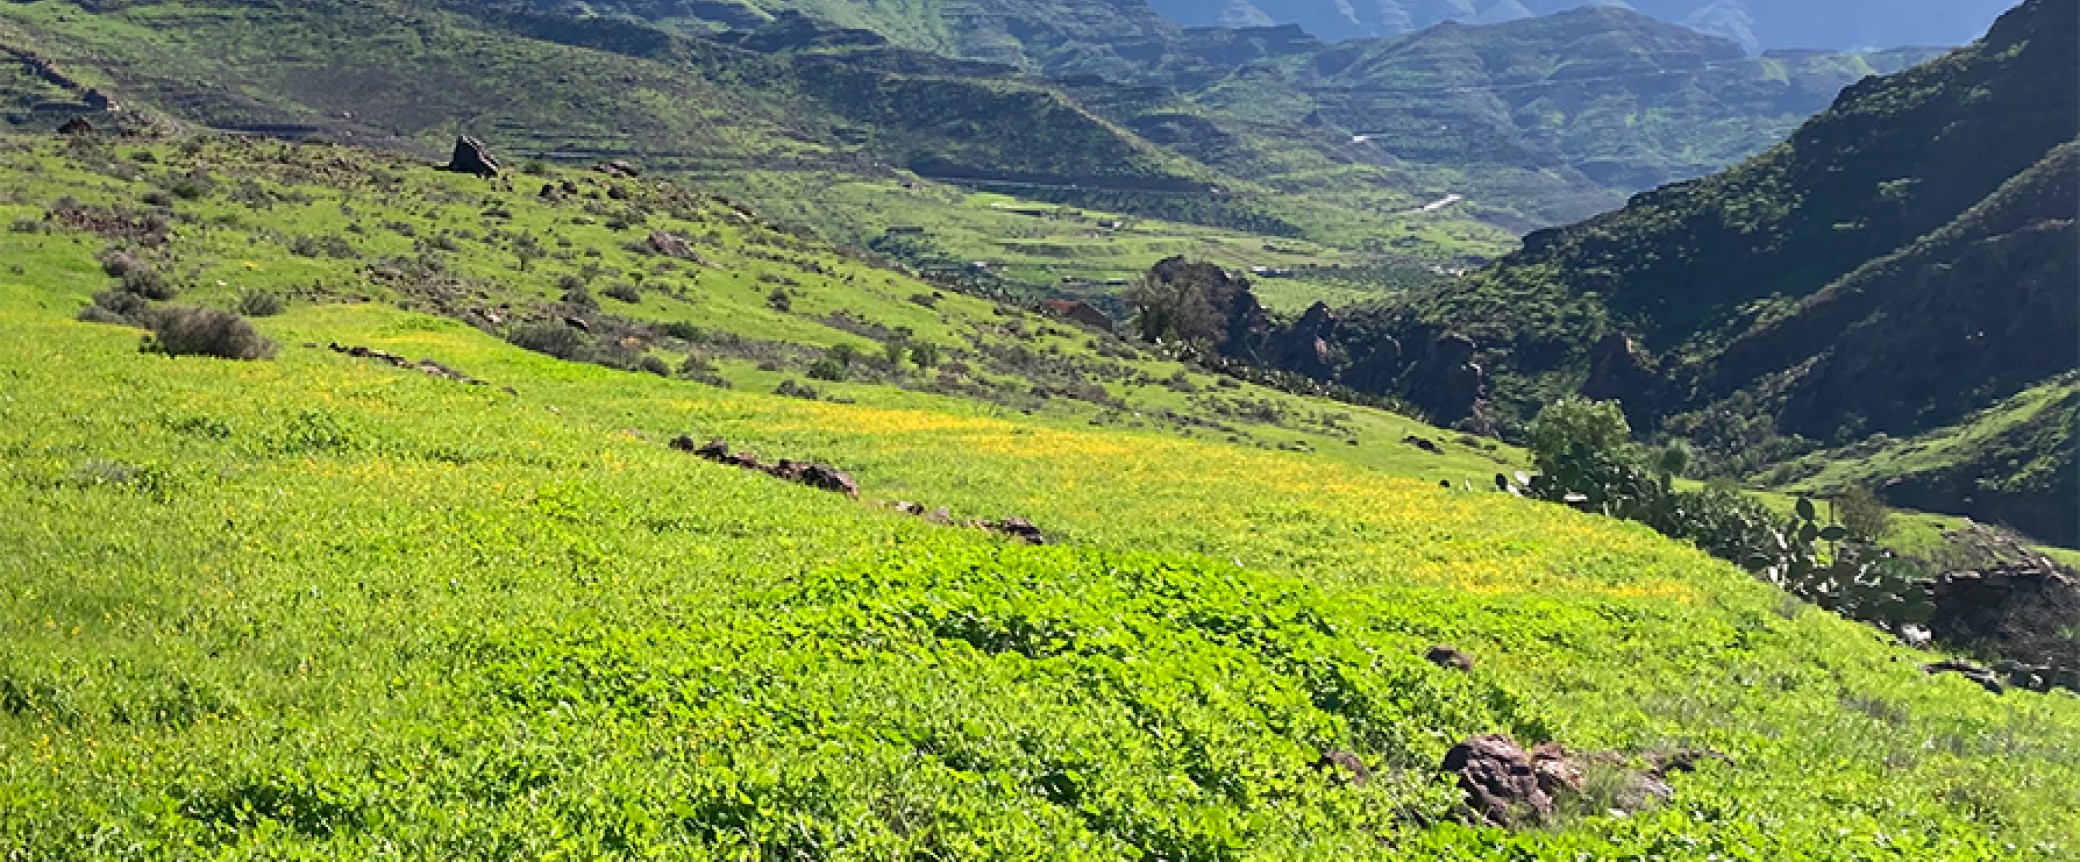 wandern gran canaria, die schönsten wanderungen auf der insel, der Lorbeerwald auf Gran Canaria